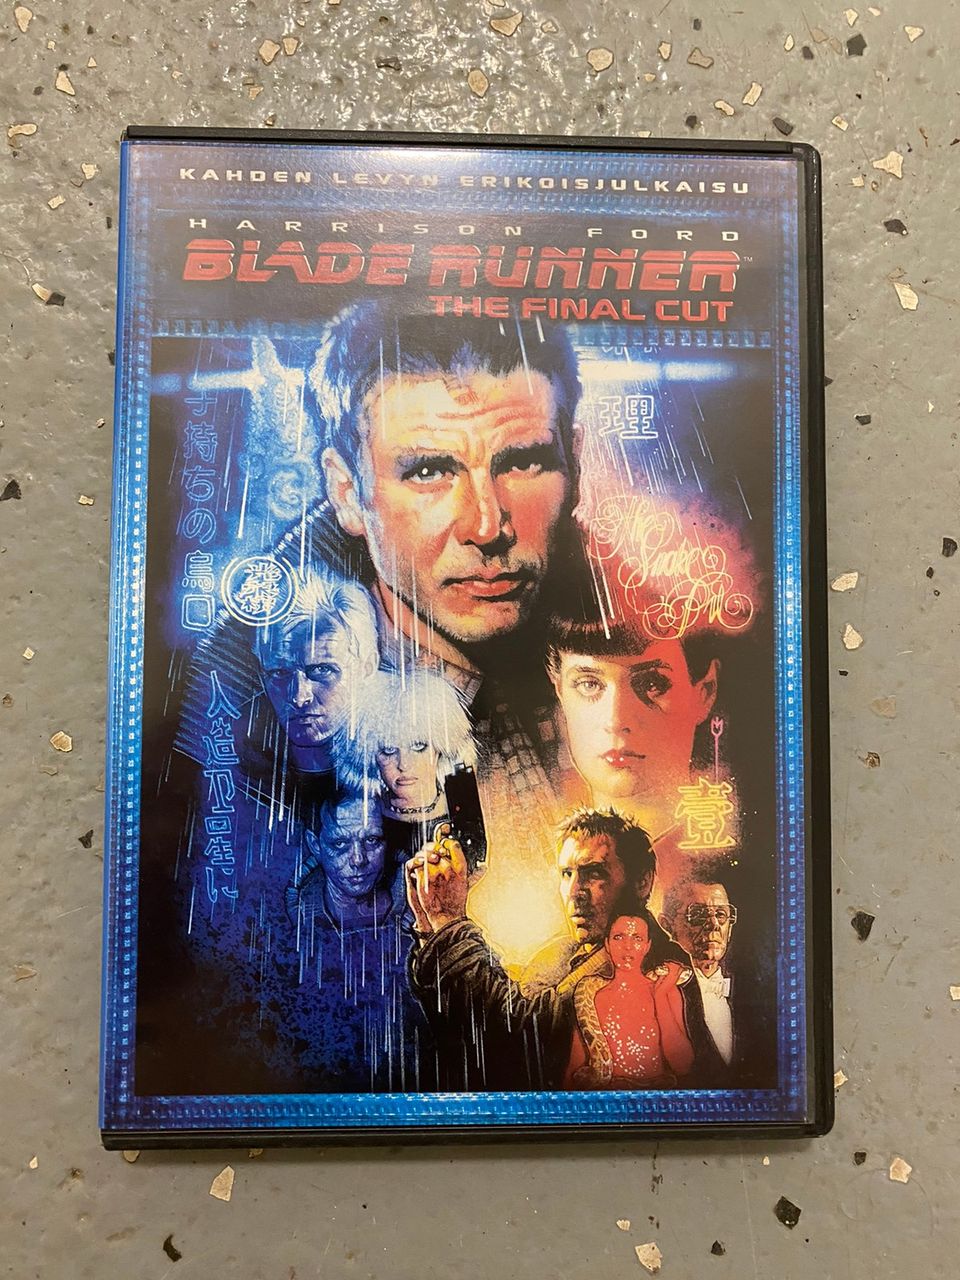 Blade runner dvd